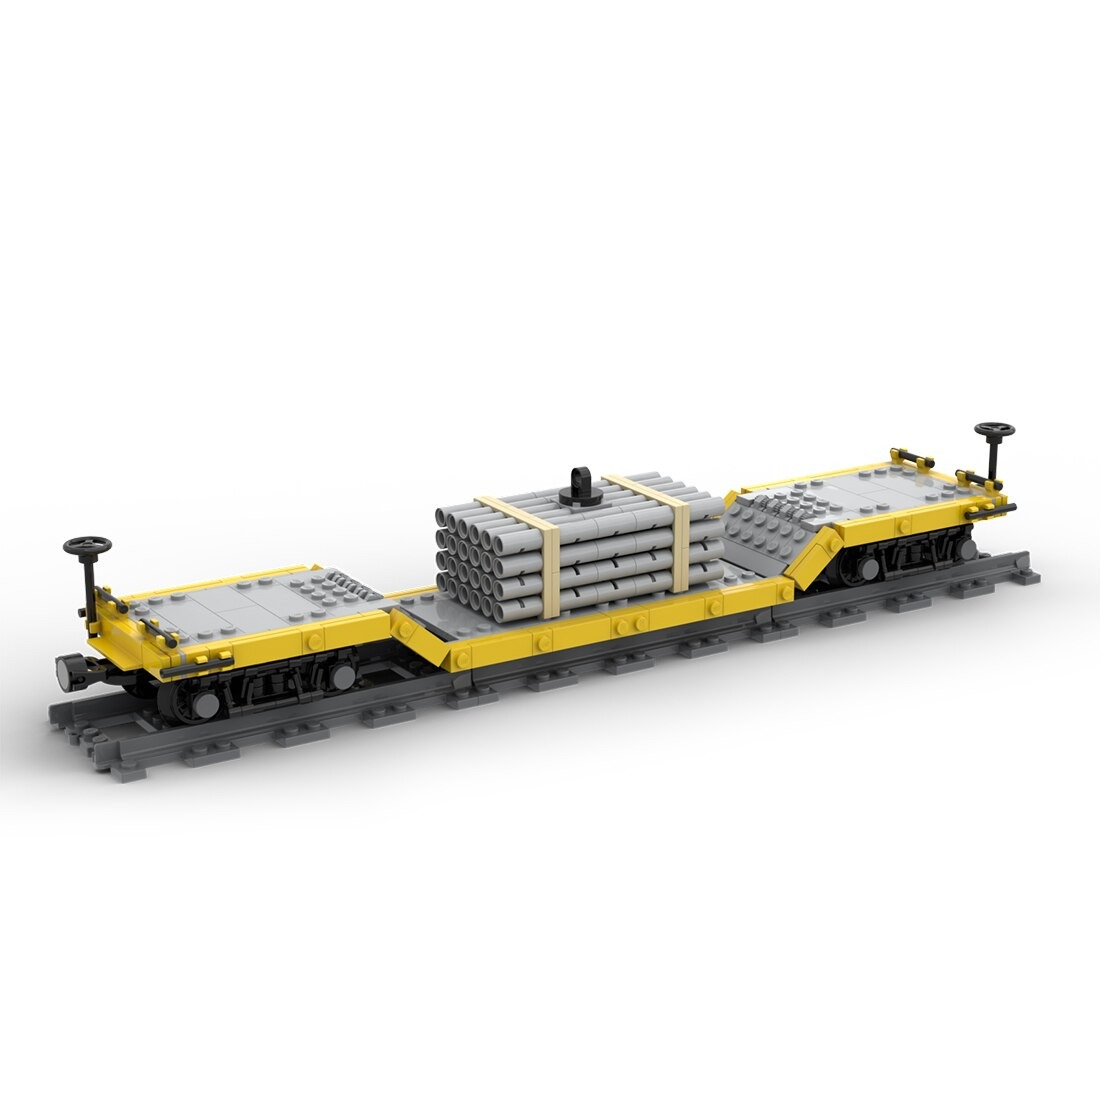 moc 46691 center drop train car model bu main 2 - DECOOL